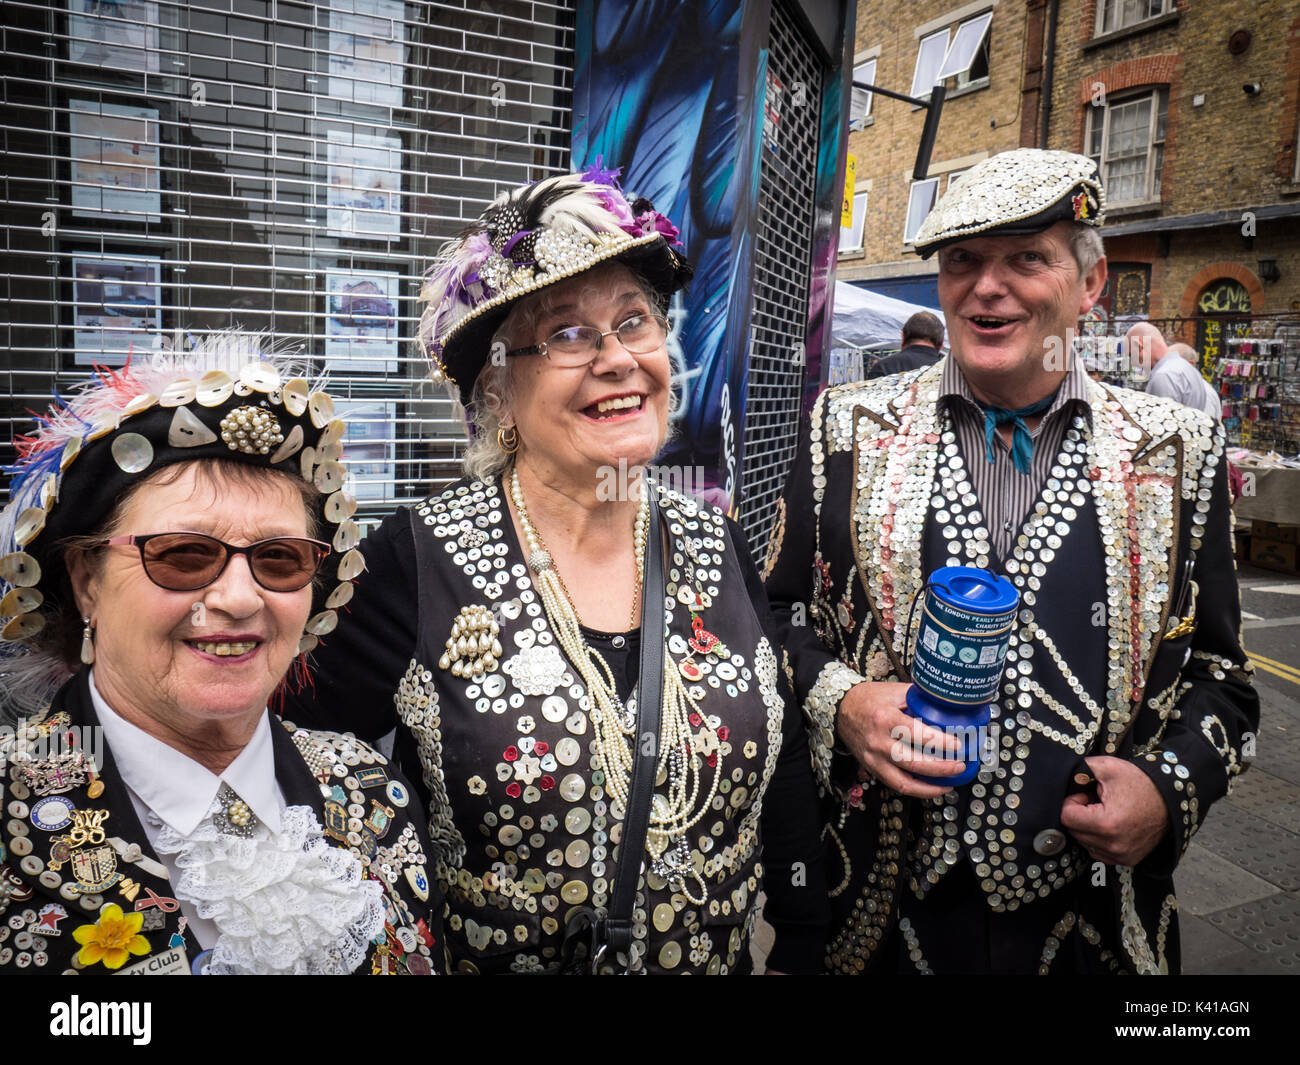 London Pearly Kings and Queens collecter des fonds pour la charité, le dimanche matin à Londres, Brick Lane Market à Spitalfields, East End, Londres UK Banque D'Images